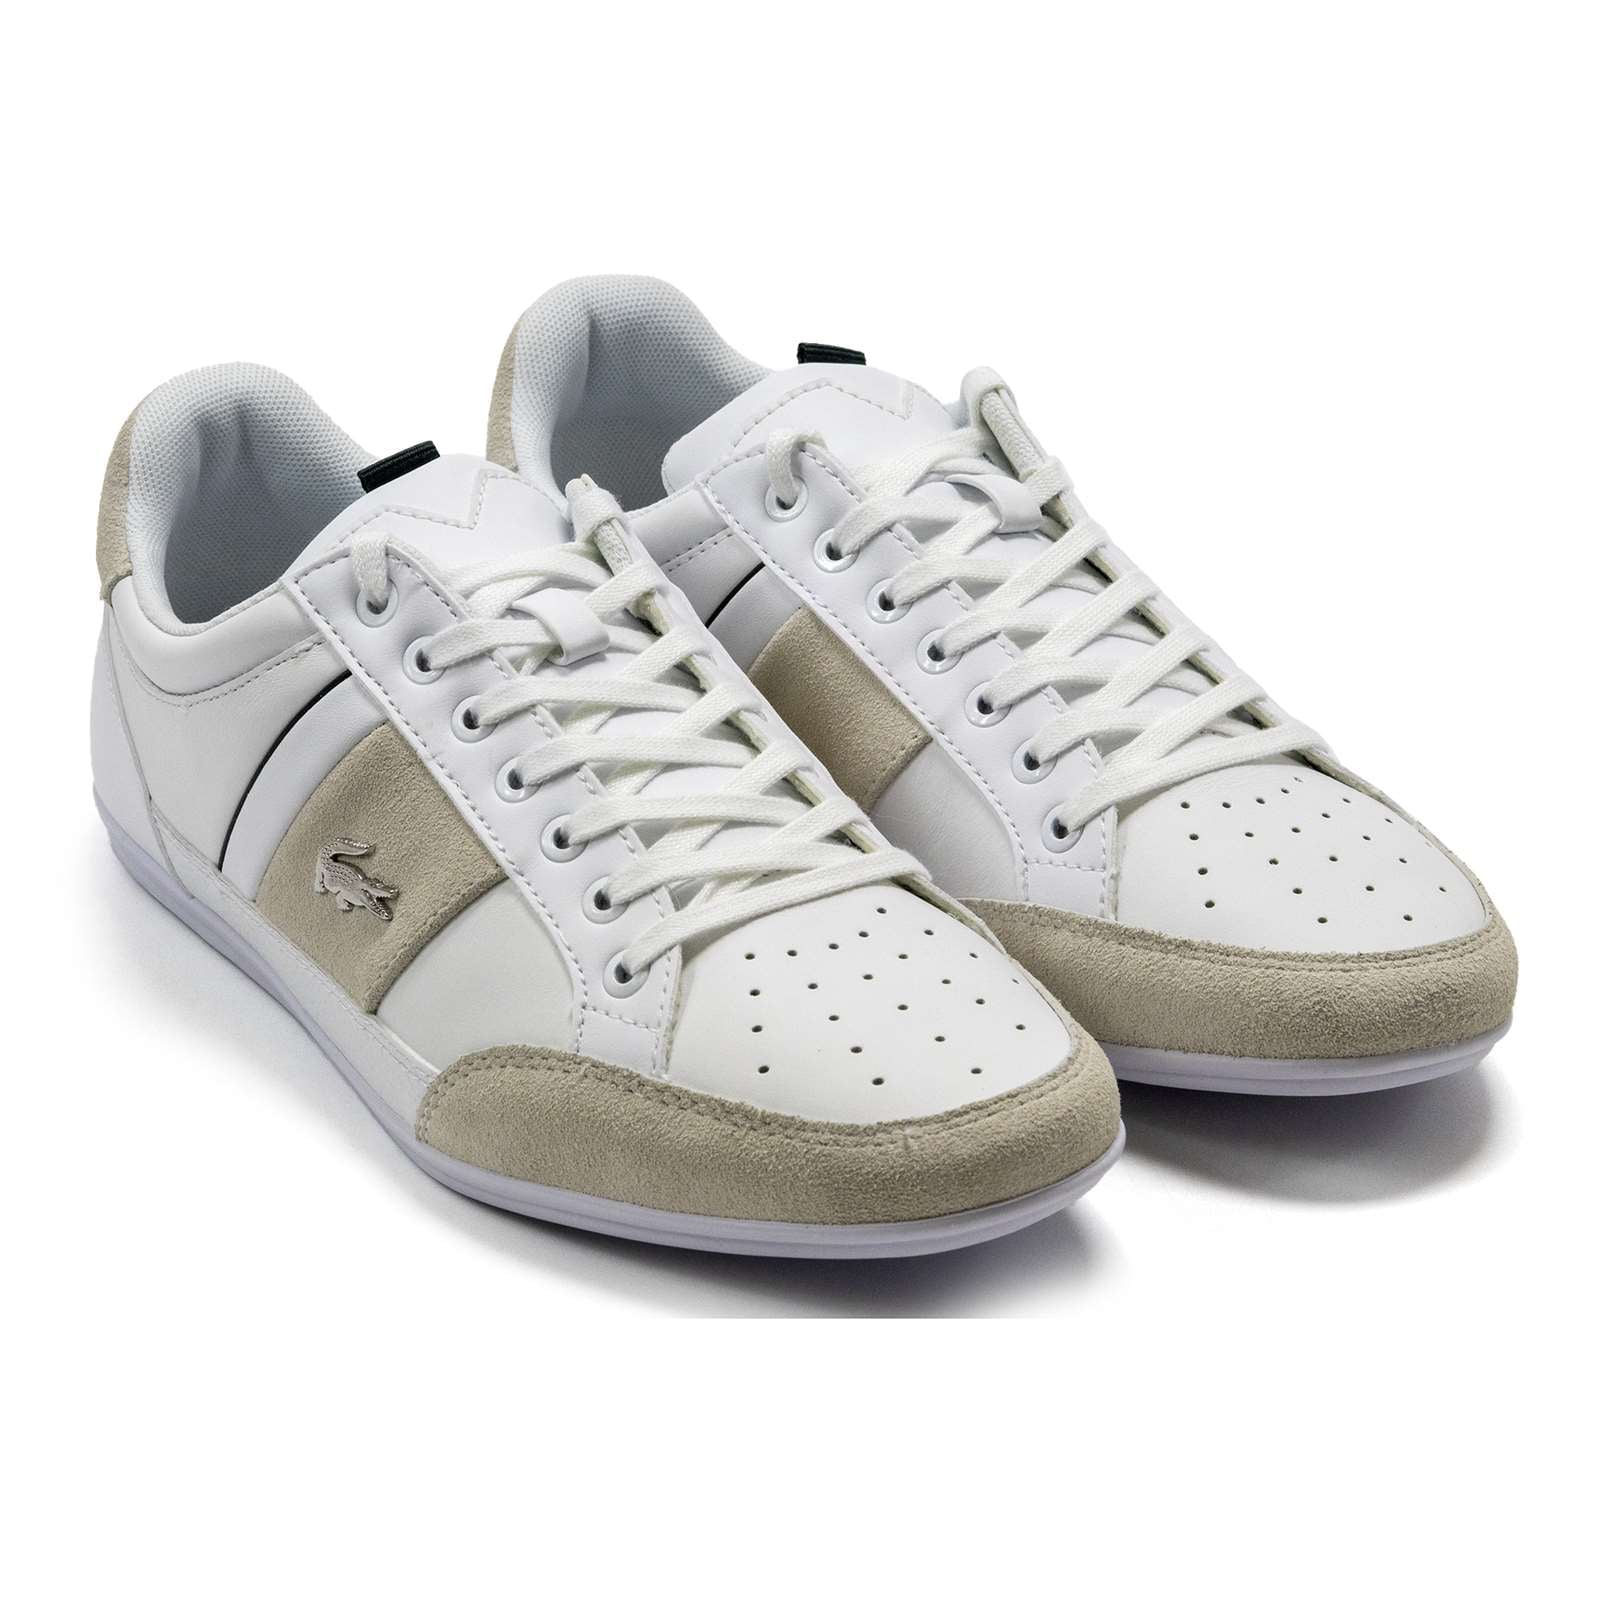 Lacoste Chaymon Sneakers 7 Wht/Dk Grn Walmart.com